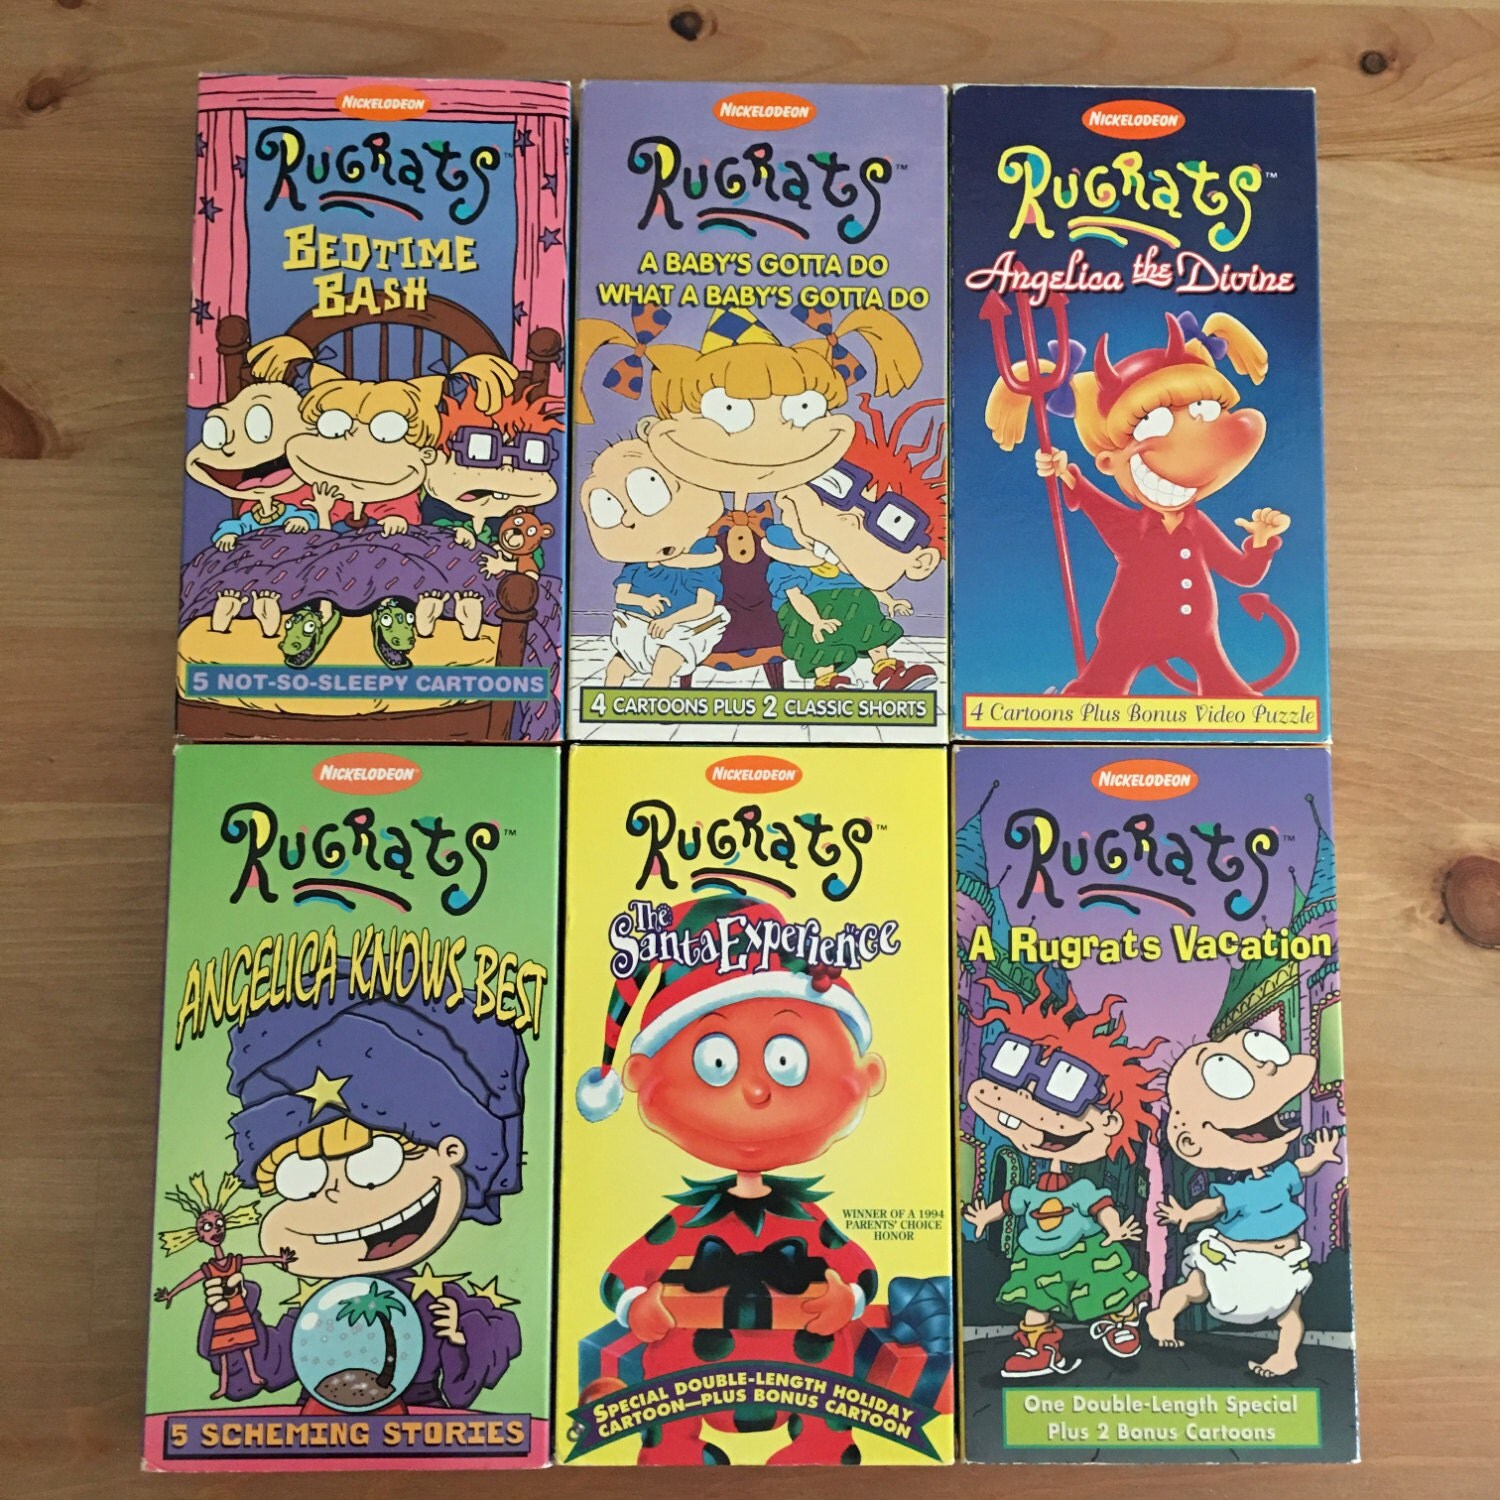 Rugrats VHS Paramount Viacom Nickelodeon 1990's Cartoons